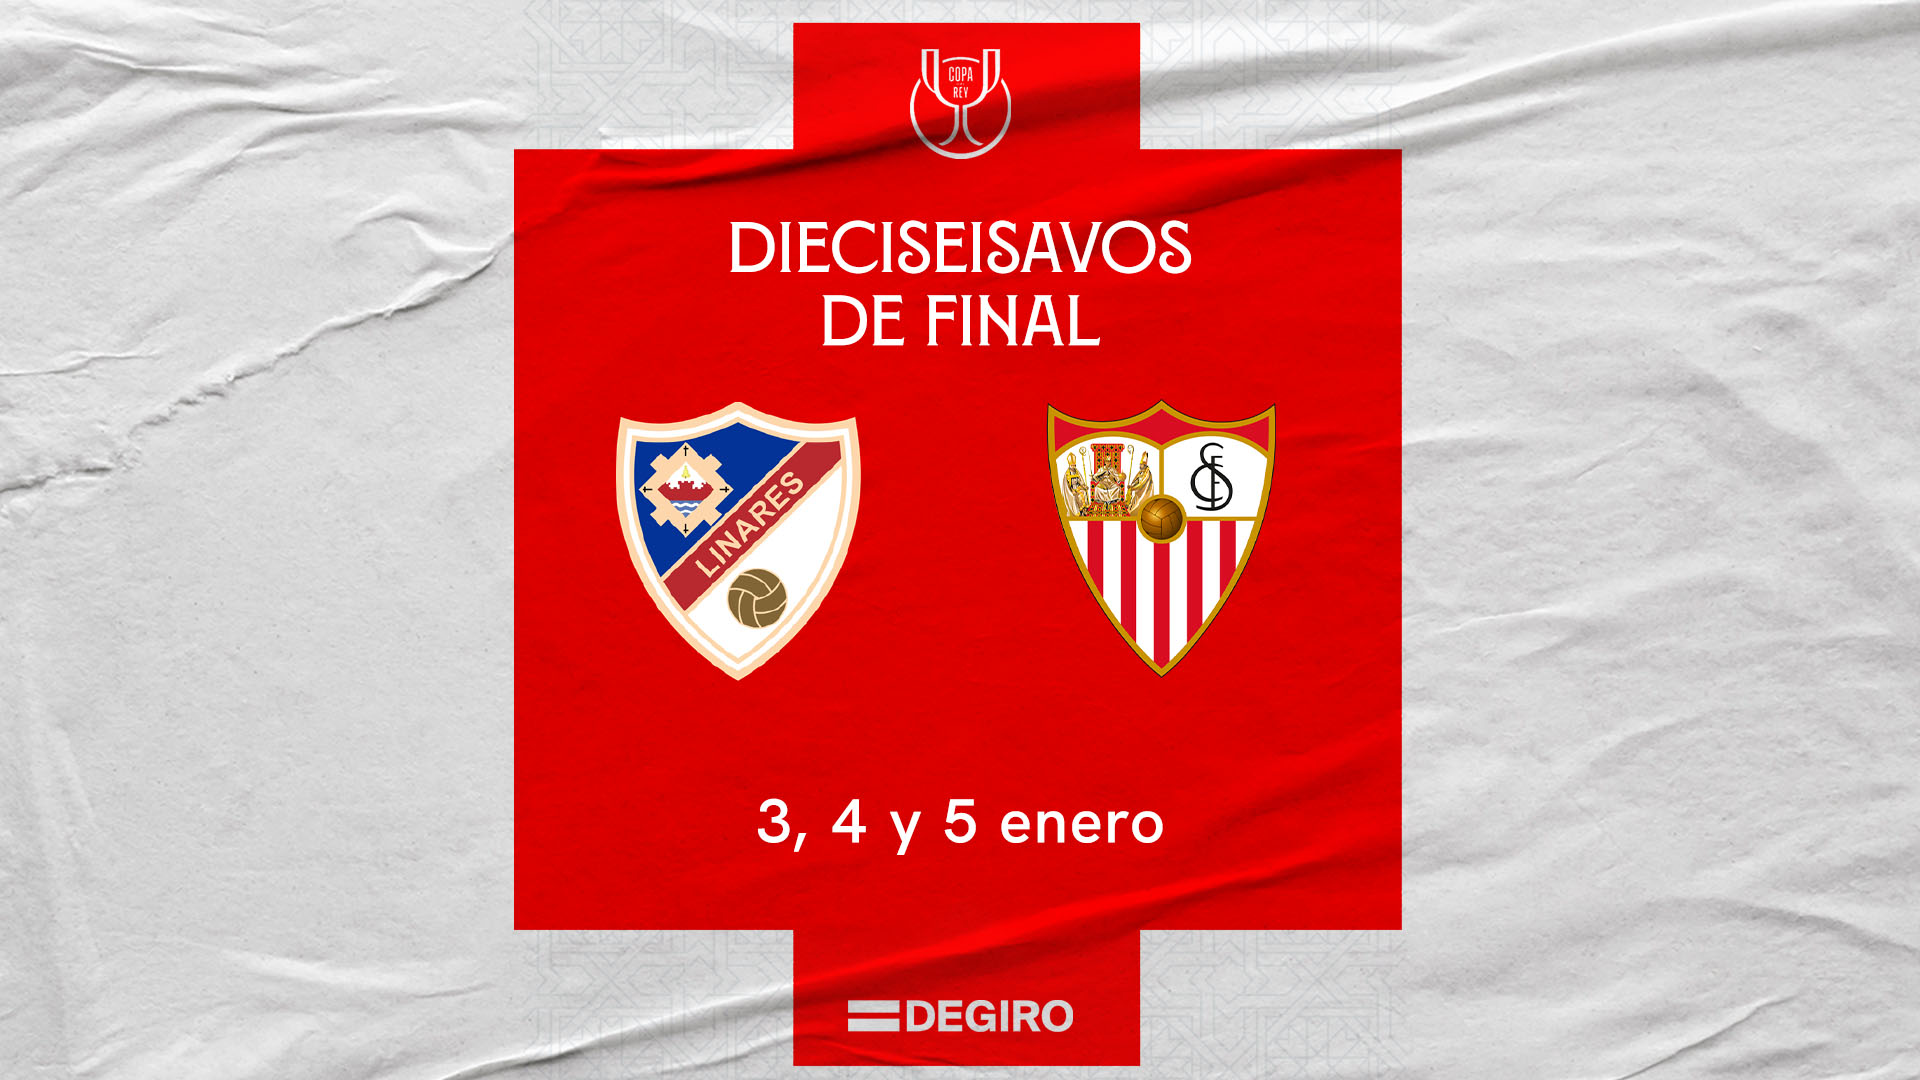 El Linares Deportivo, rival en los dieciseisavos de la Copa del Rey